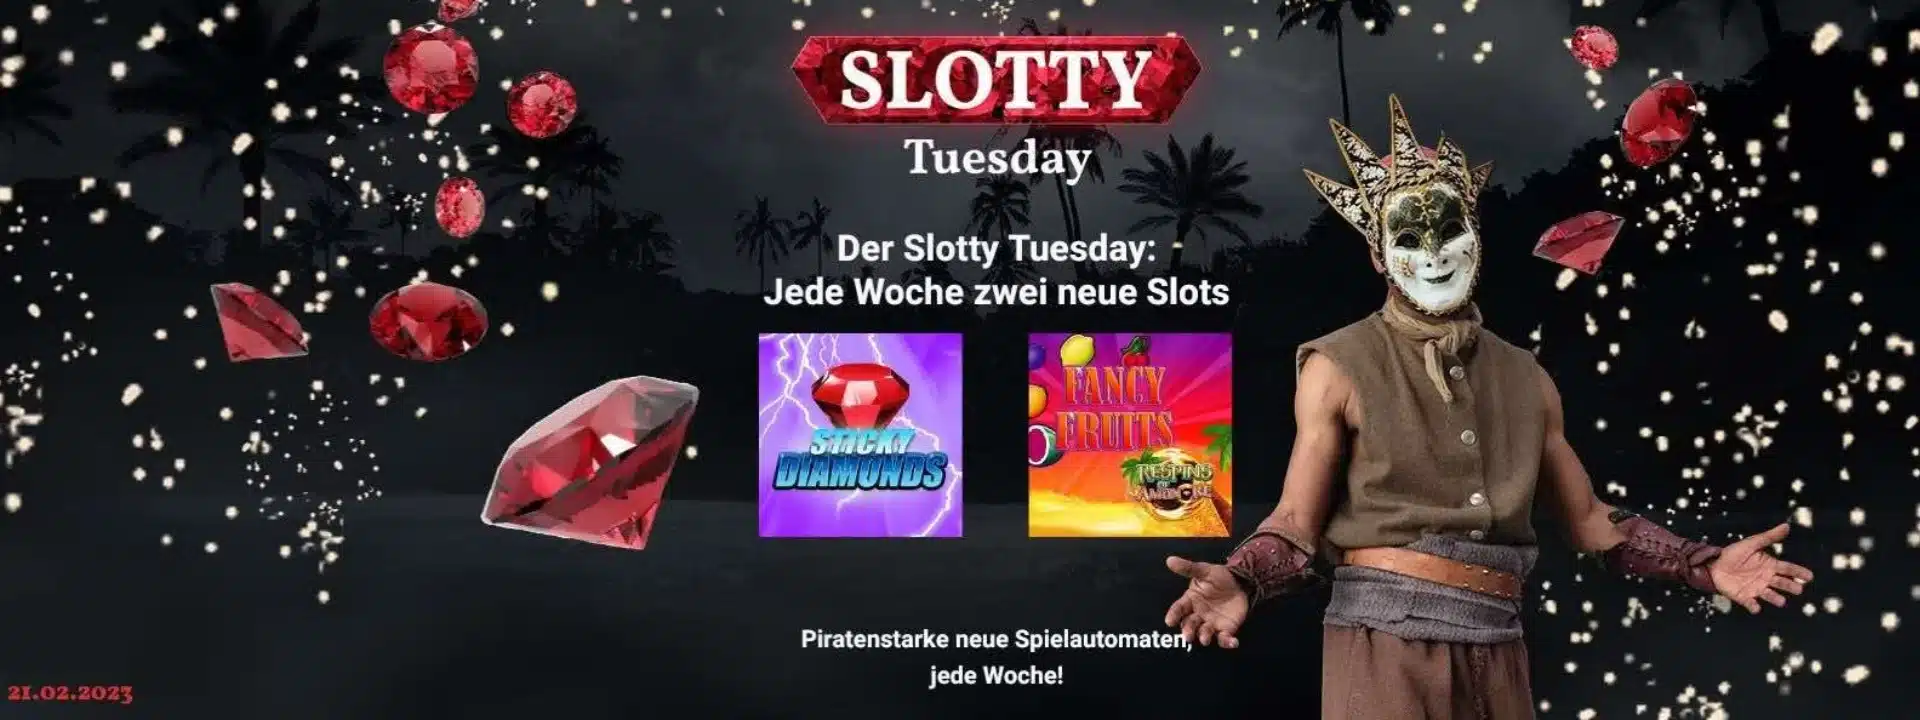 JackpotPiraten Erfahrungen - Der Slotty Tuesday